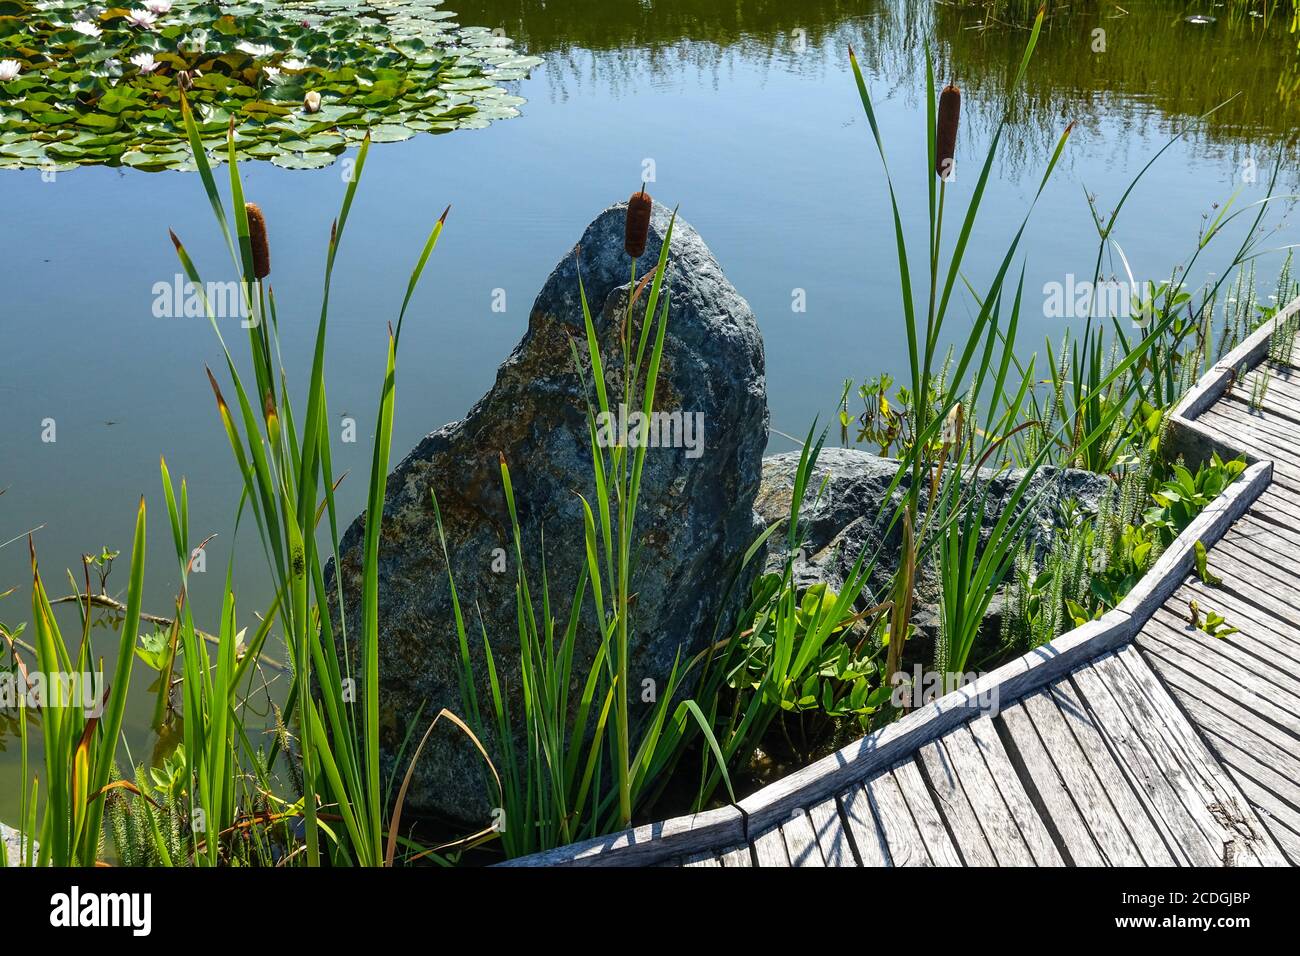 Piedra decorativa y plantas acuáticas en crecimiento, caña de buey y lirios de agua en un estanque de jardín, un camino de madera alrededor, recoger el agua de lluvia Foto de stock